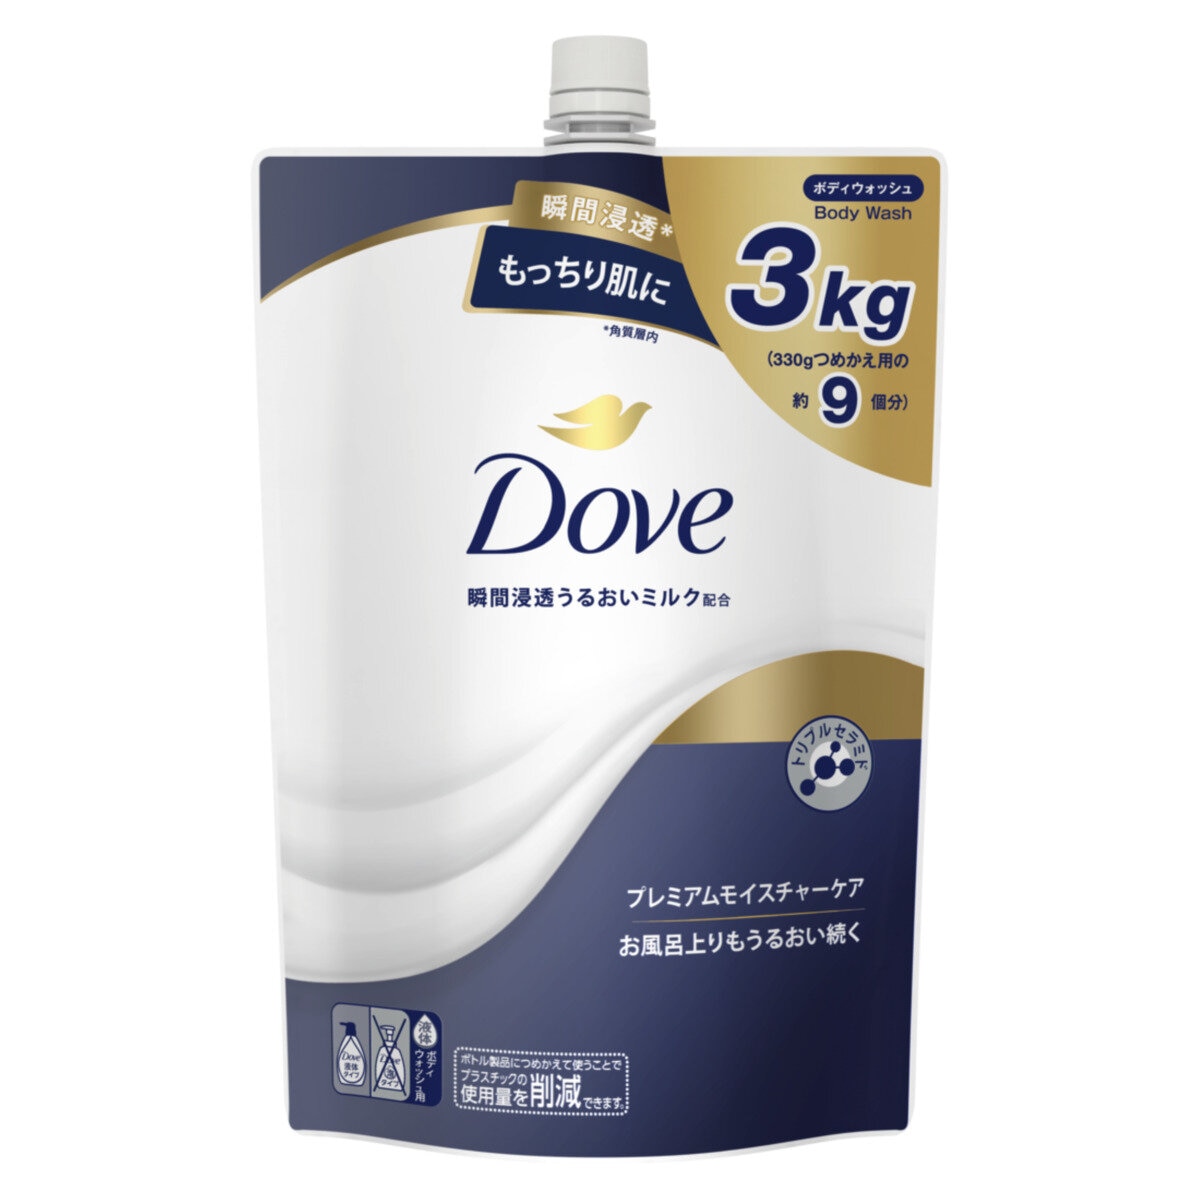 Dove (ダヴ) ボディウォッシュ プレミアム モイスチャーケア 詰替え用 3kg | Costco Japan